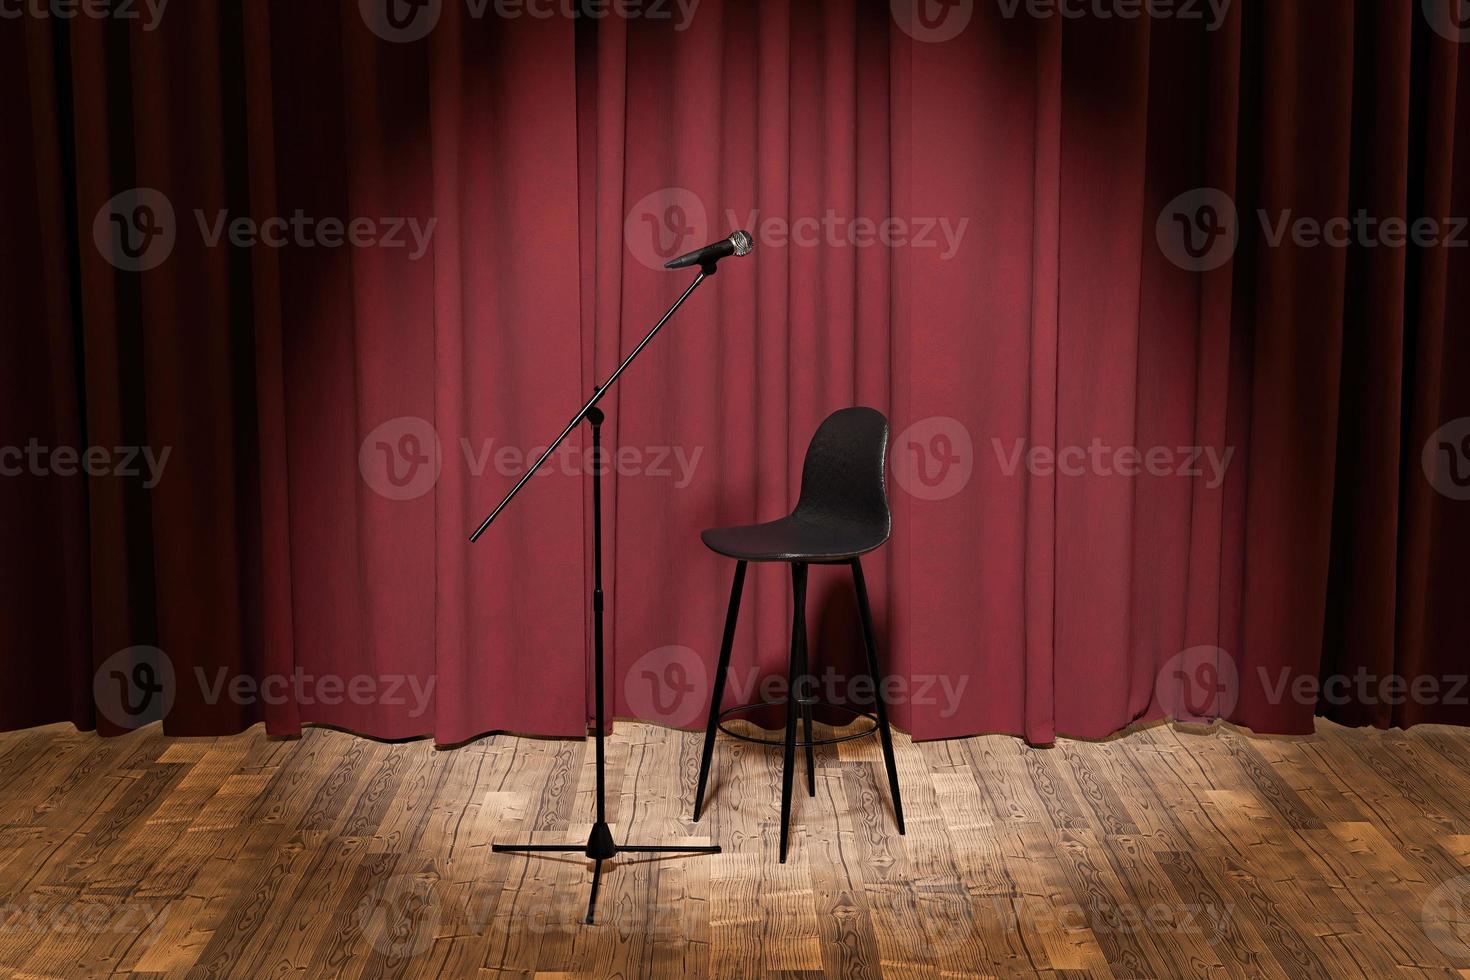 microfoon en krukje op een podium met gordijnen erachter foto